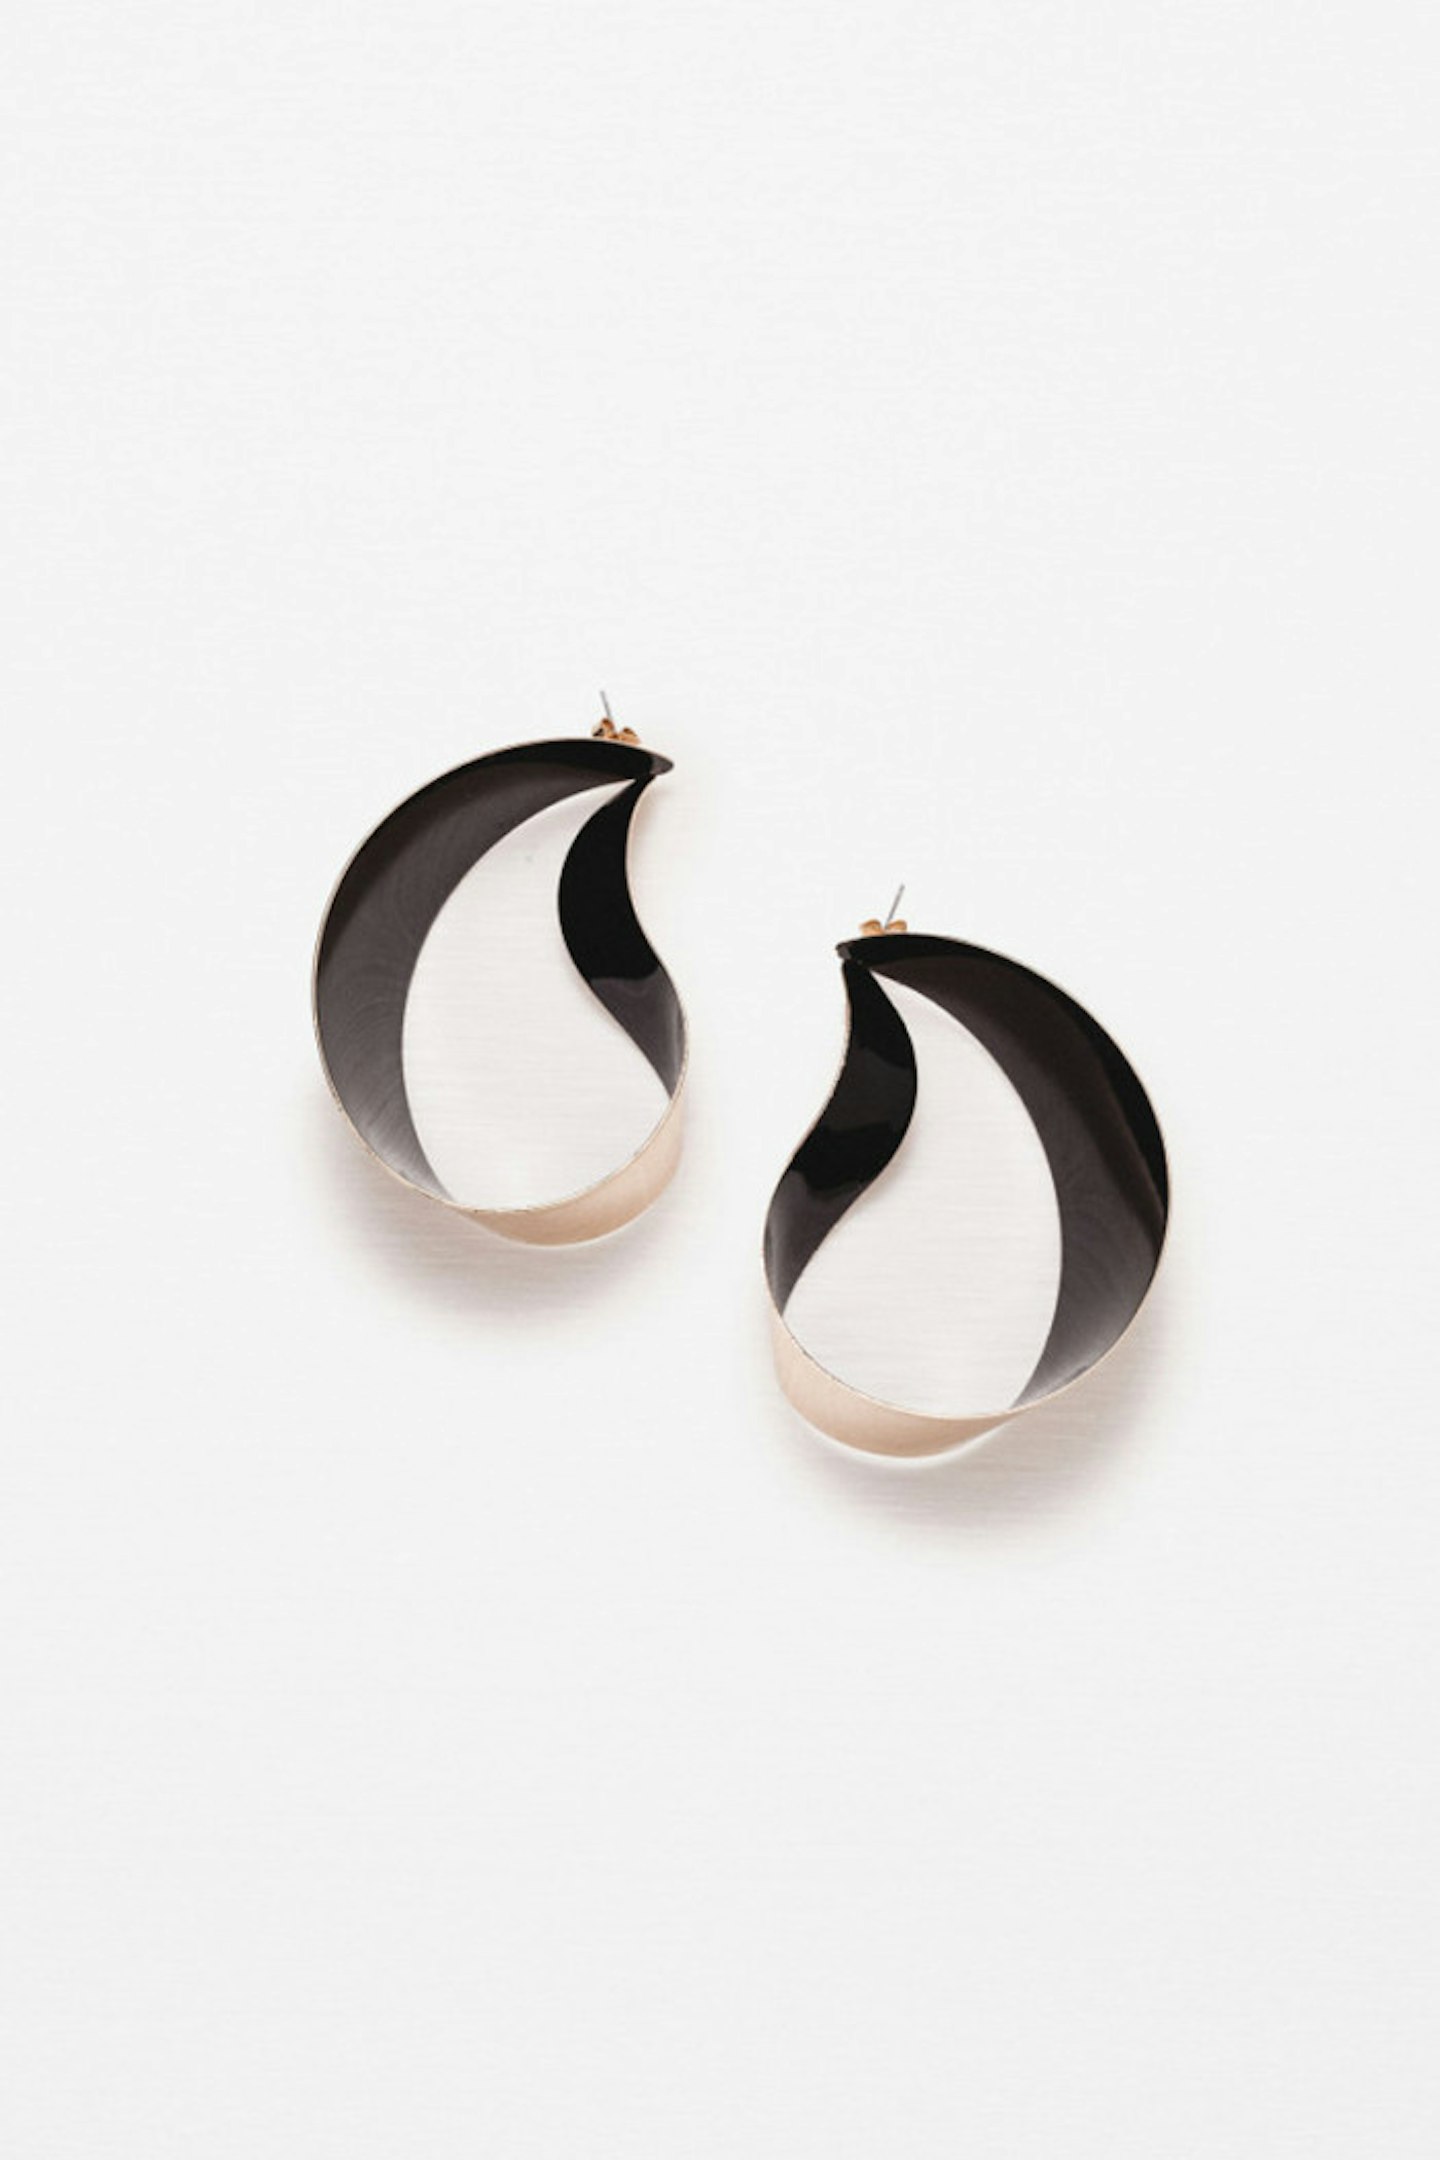 Zara Gold Earrings, £9.99